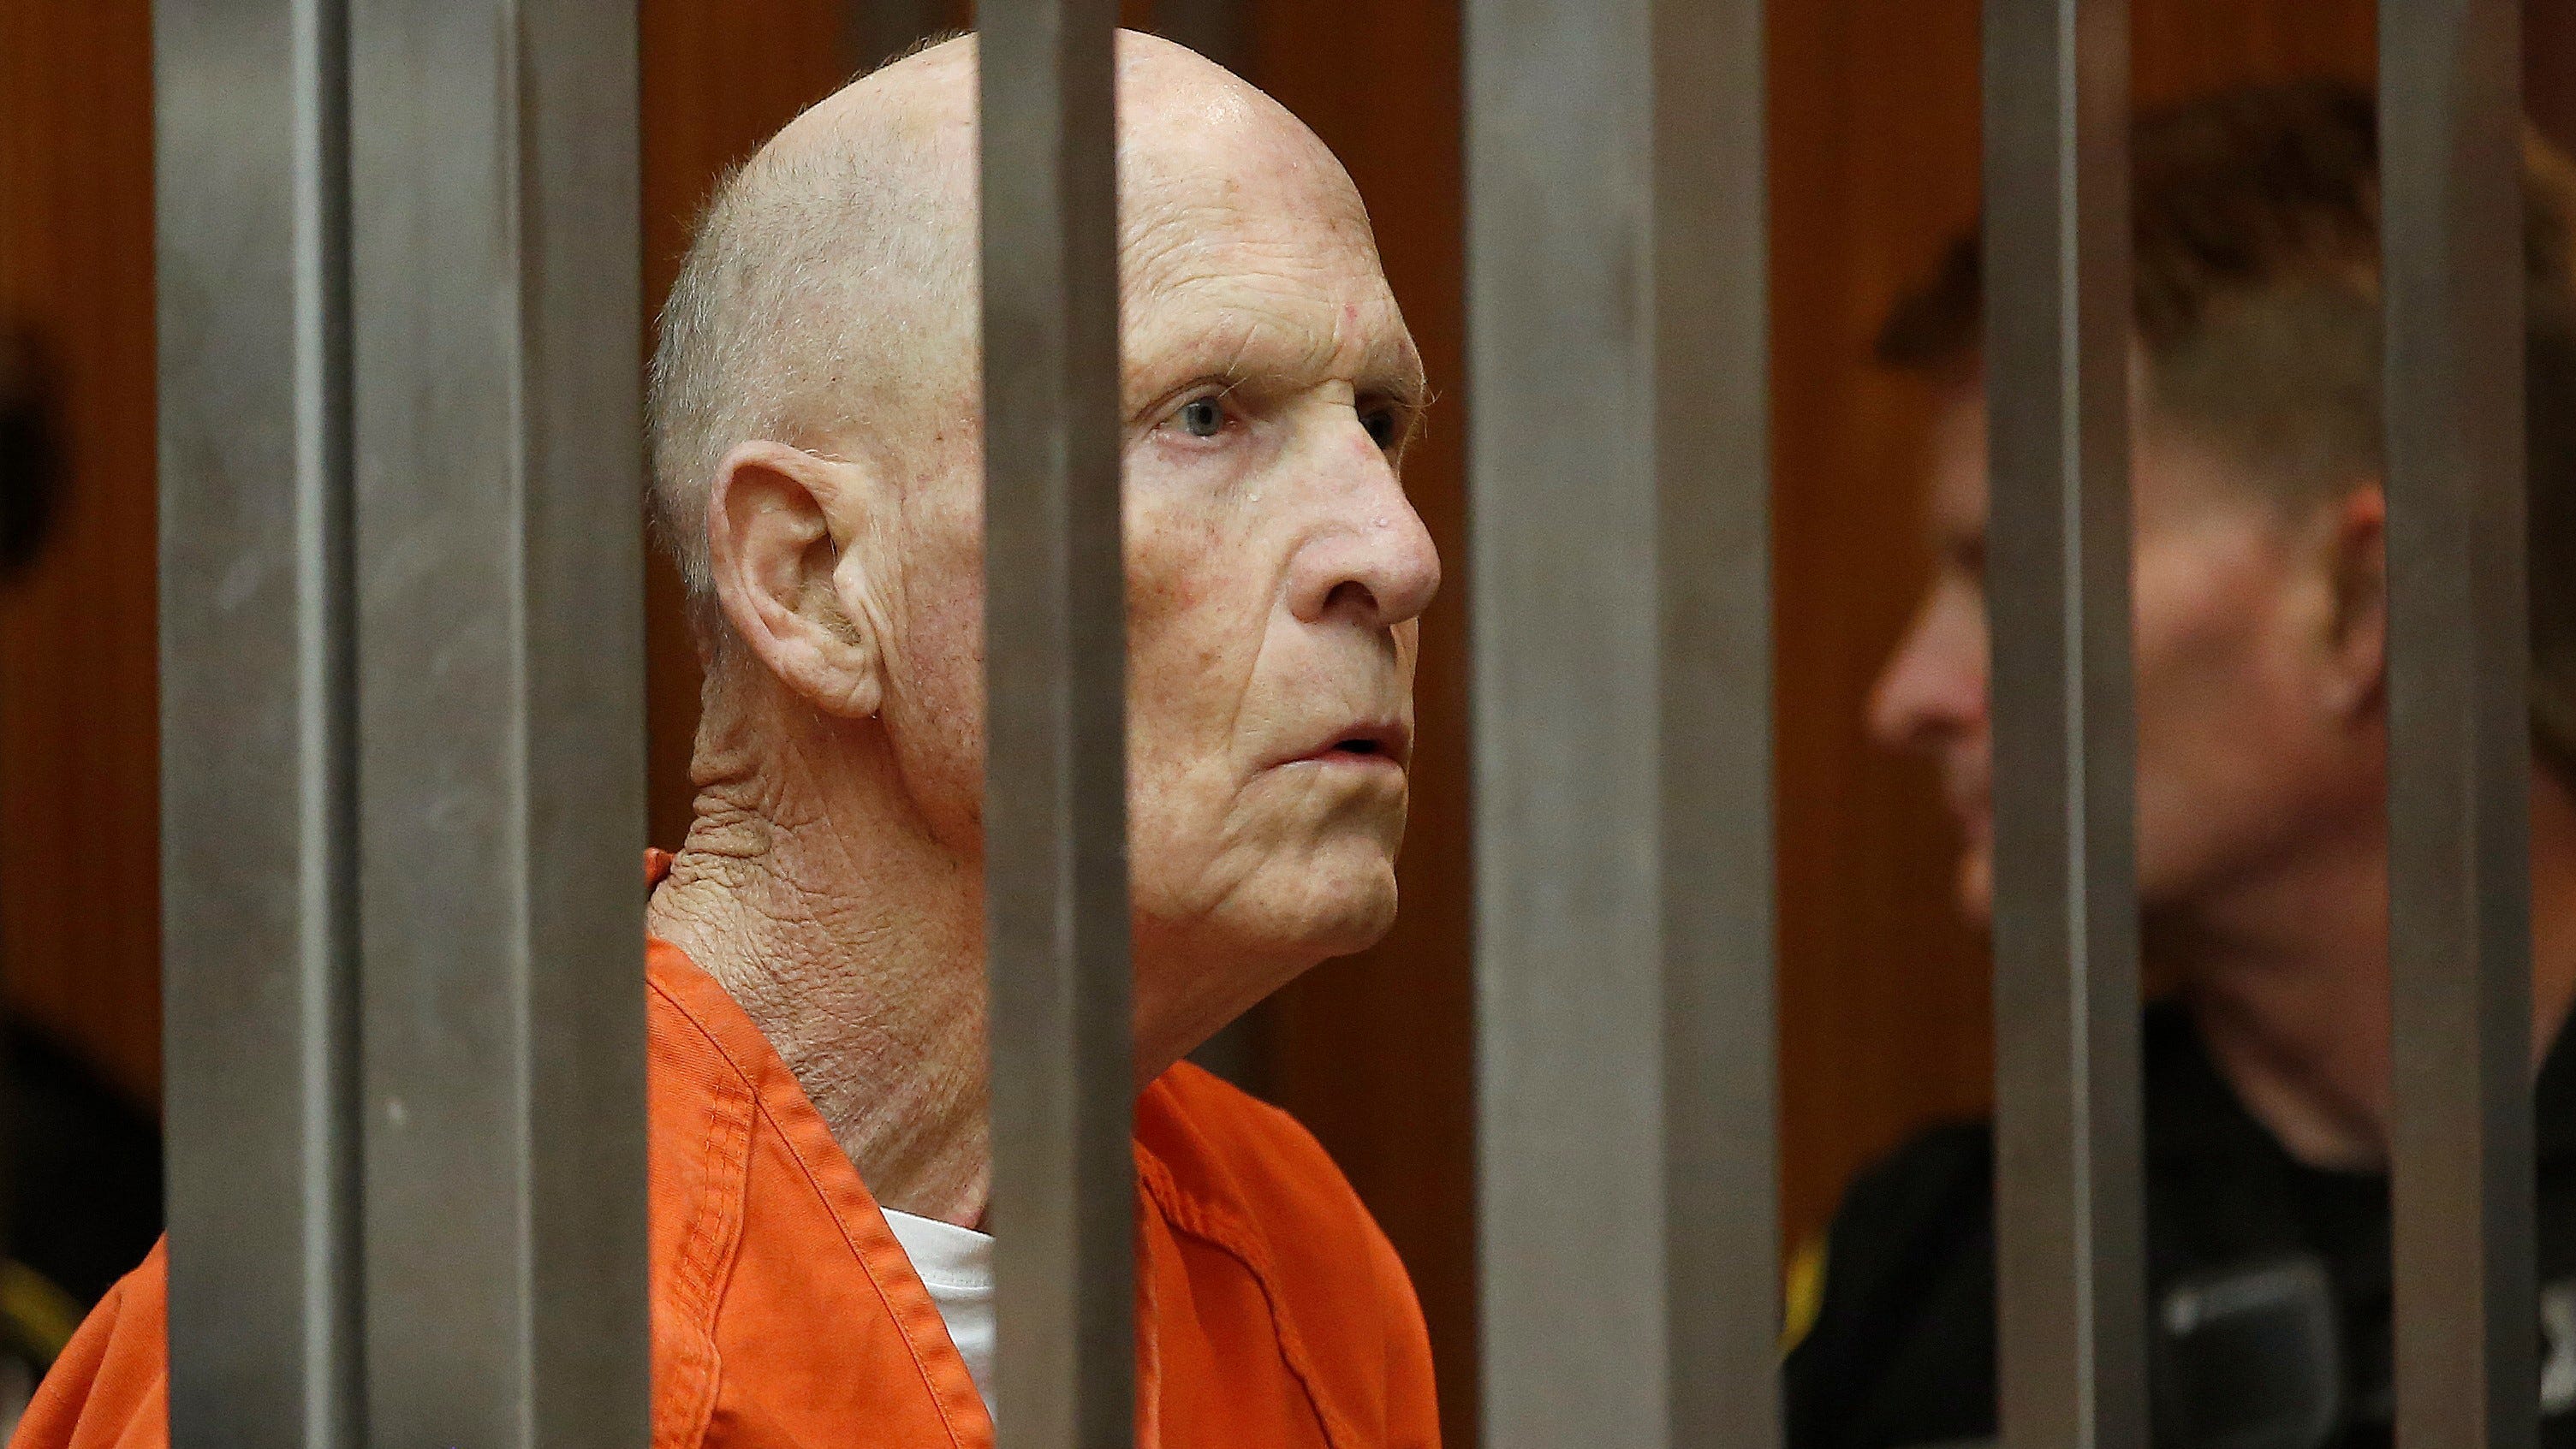 El asesino en serie “Golden State Killer” fue condenado a cadena perpetua en EEUU